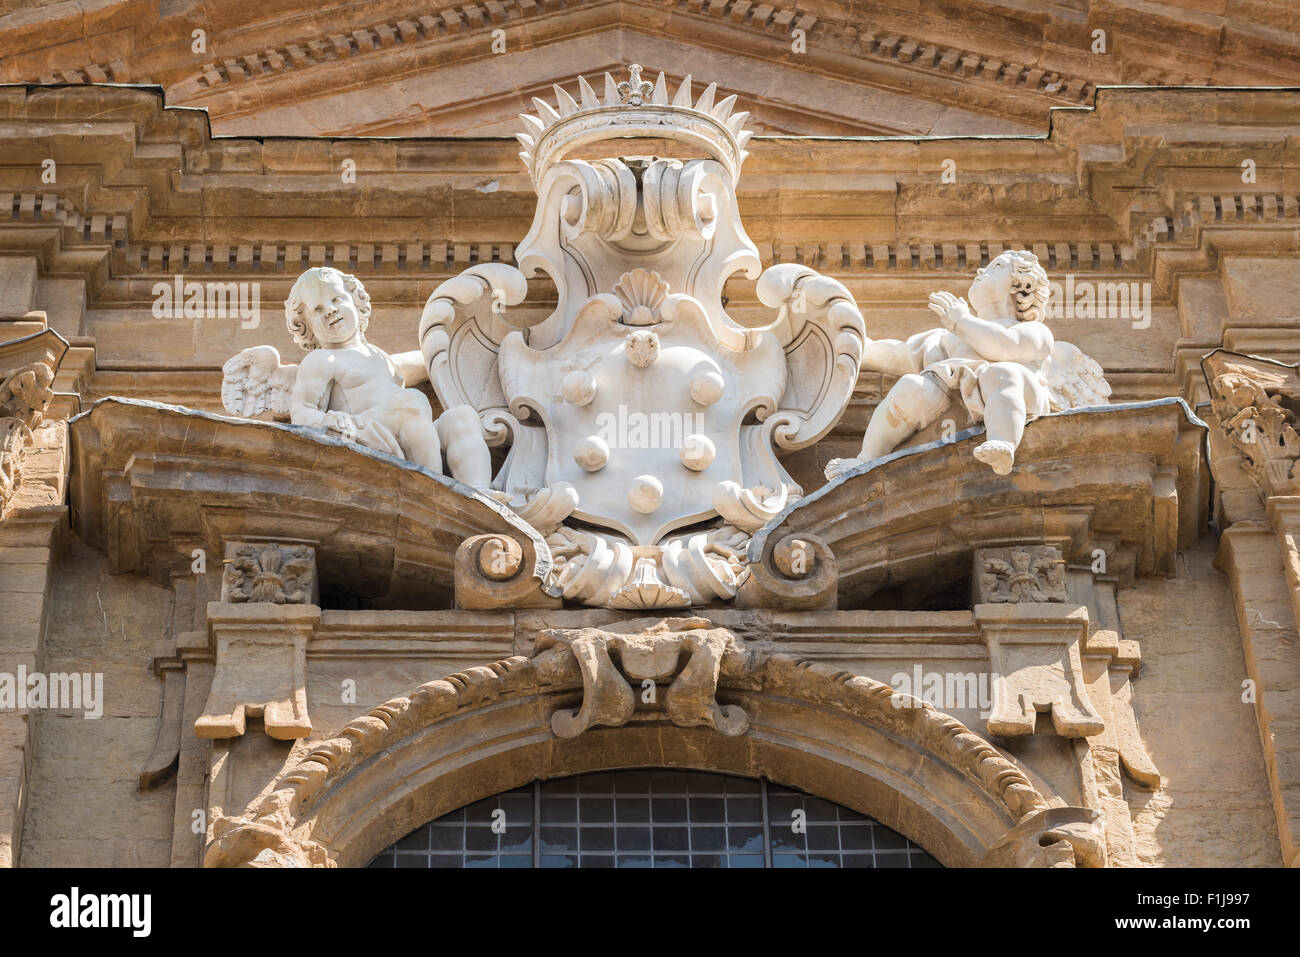 Dans l'image d'une statue en marbre de la Moyen-Âge montrant deux anges, dans le centre historique de Florence. Banque D'Images